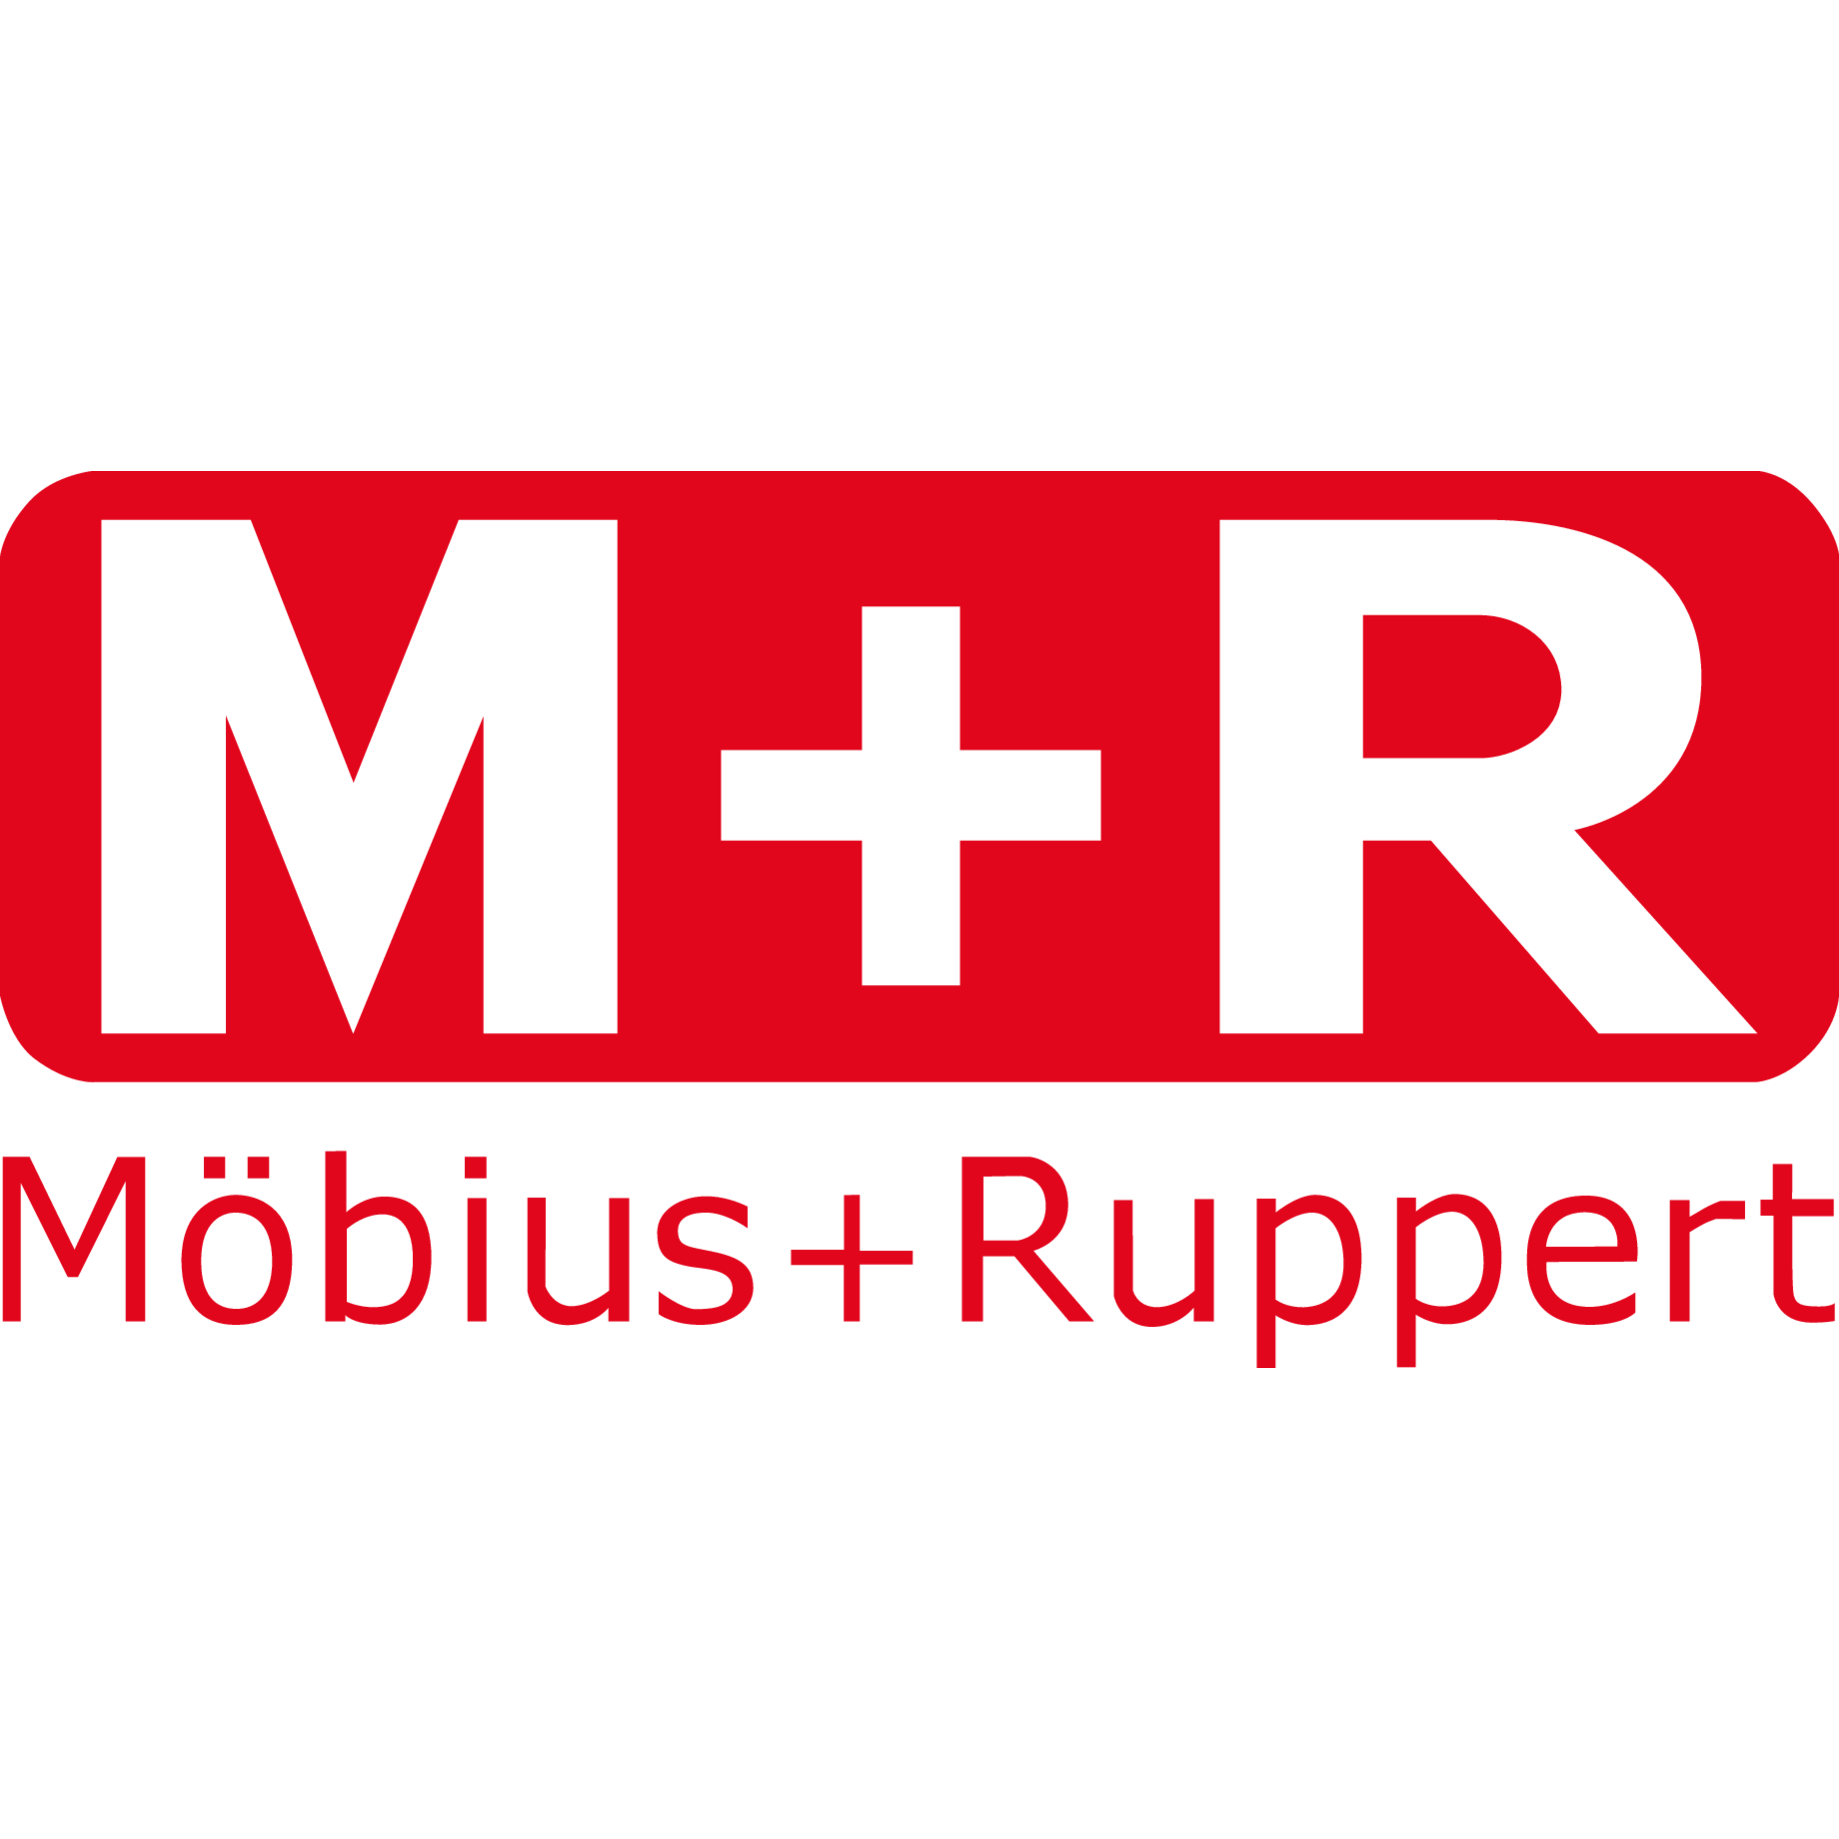 M+R